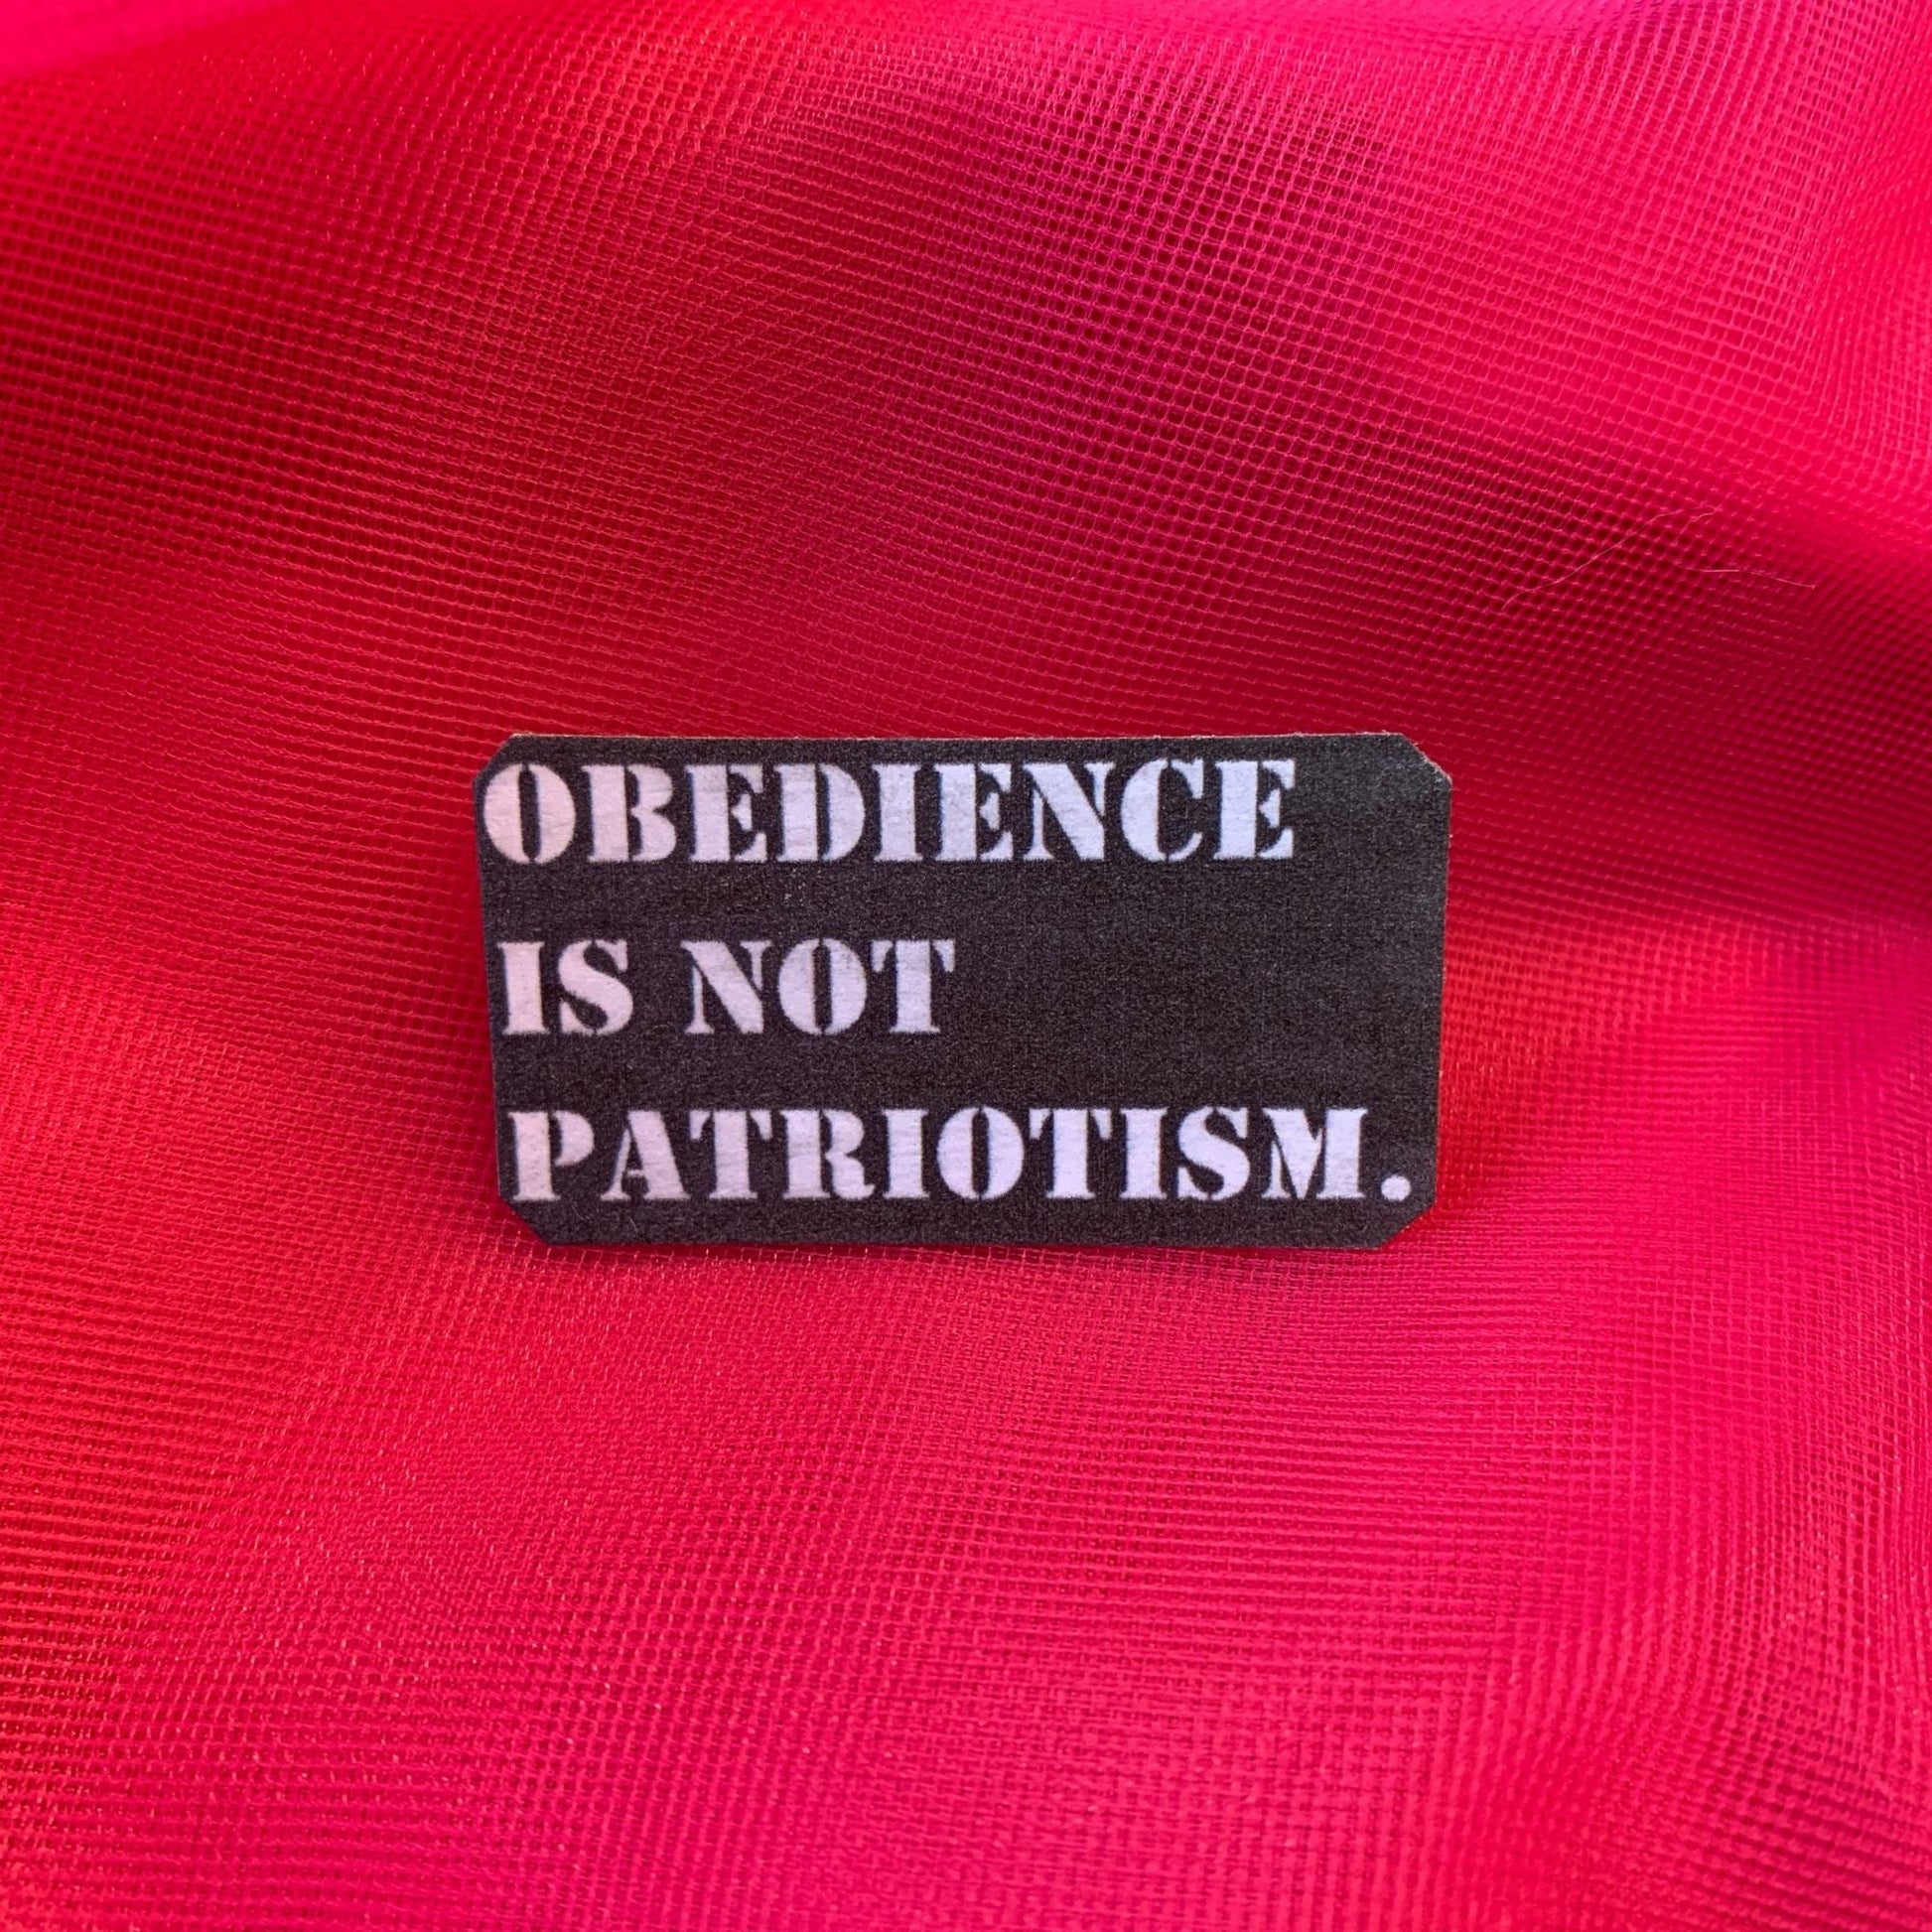 Obedience Is Not Patriotism Handmade Metal Pin